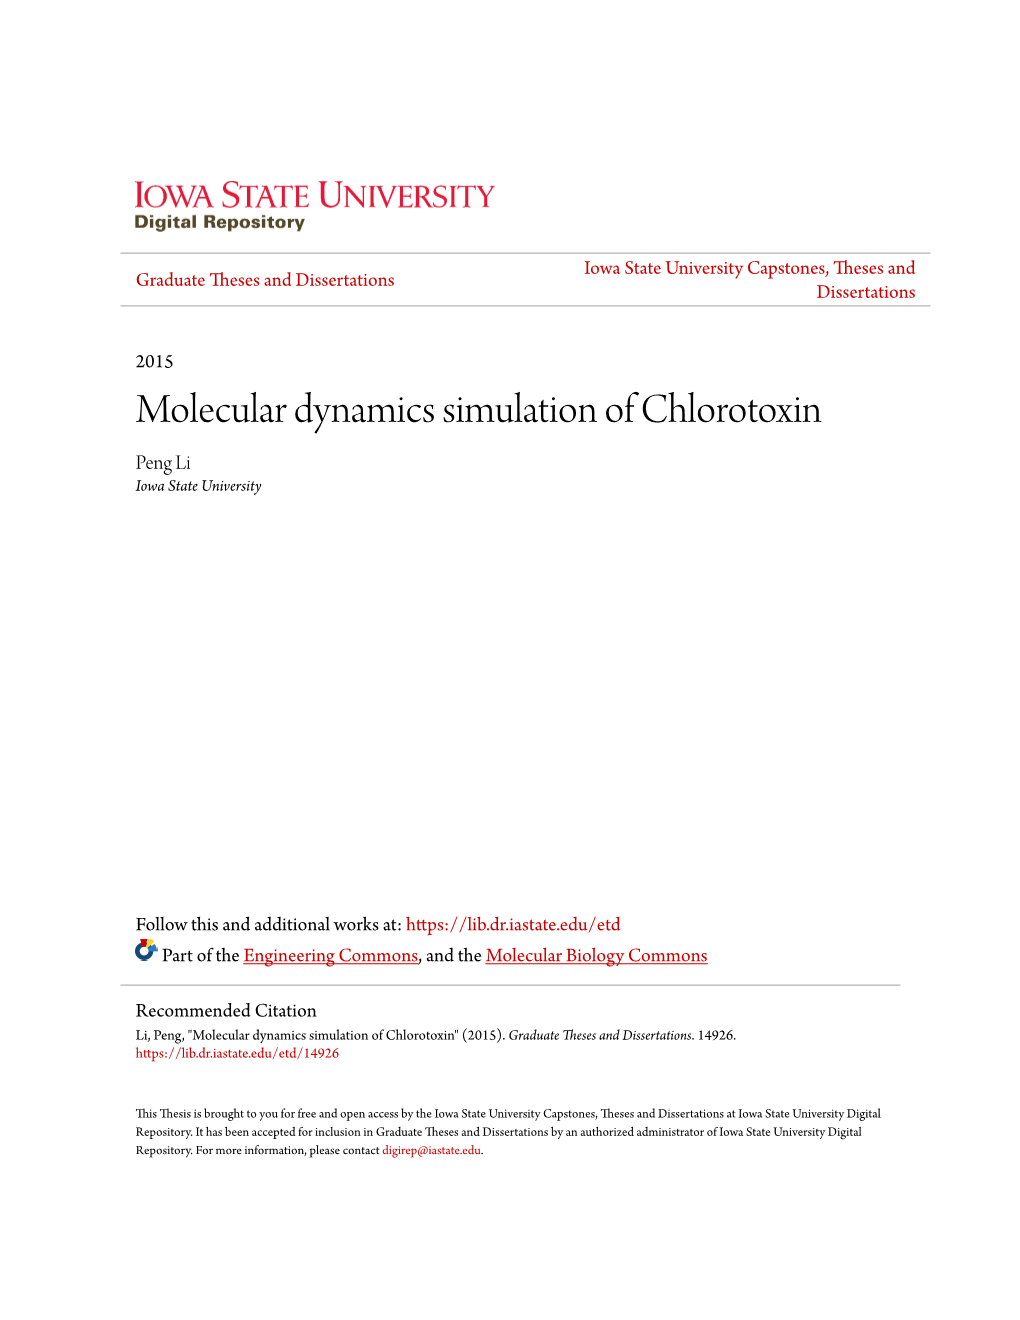 Molecular Dynamics Simulation of Chlorotoxin Peng Li Iowa State University